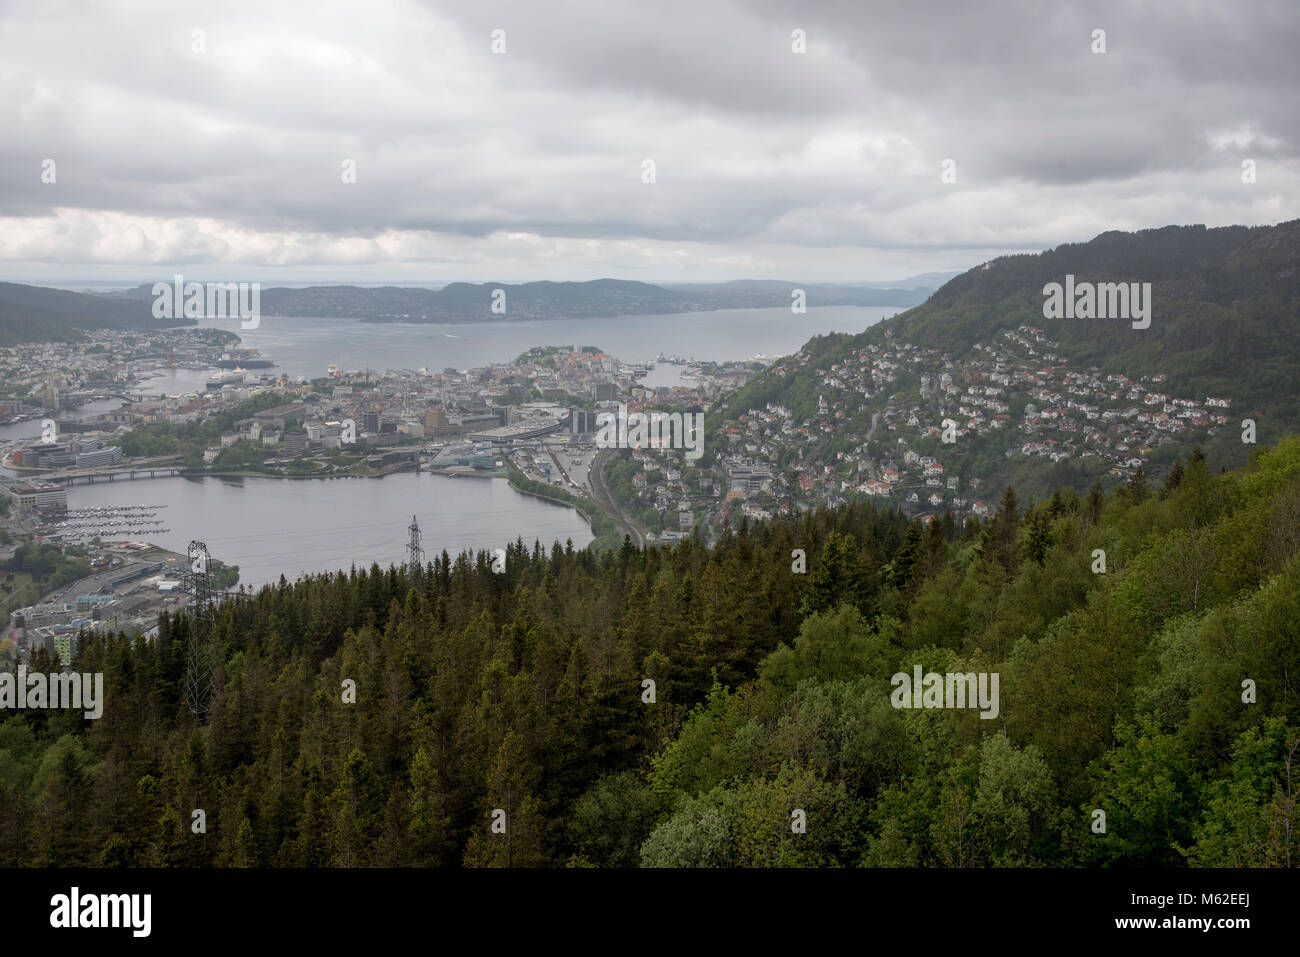 Ulriken ist ein 643 Meter hoher Berg mit einer beeindruckenden Aussicht auf die Stadt Bergen und Norwegion natürlicher Hafen Vågen. Stockfoto